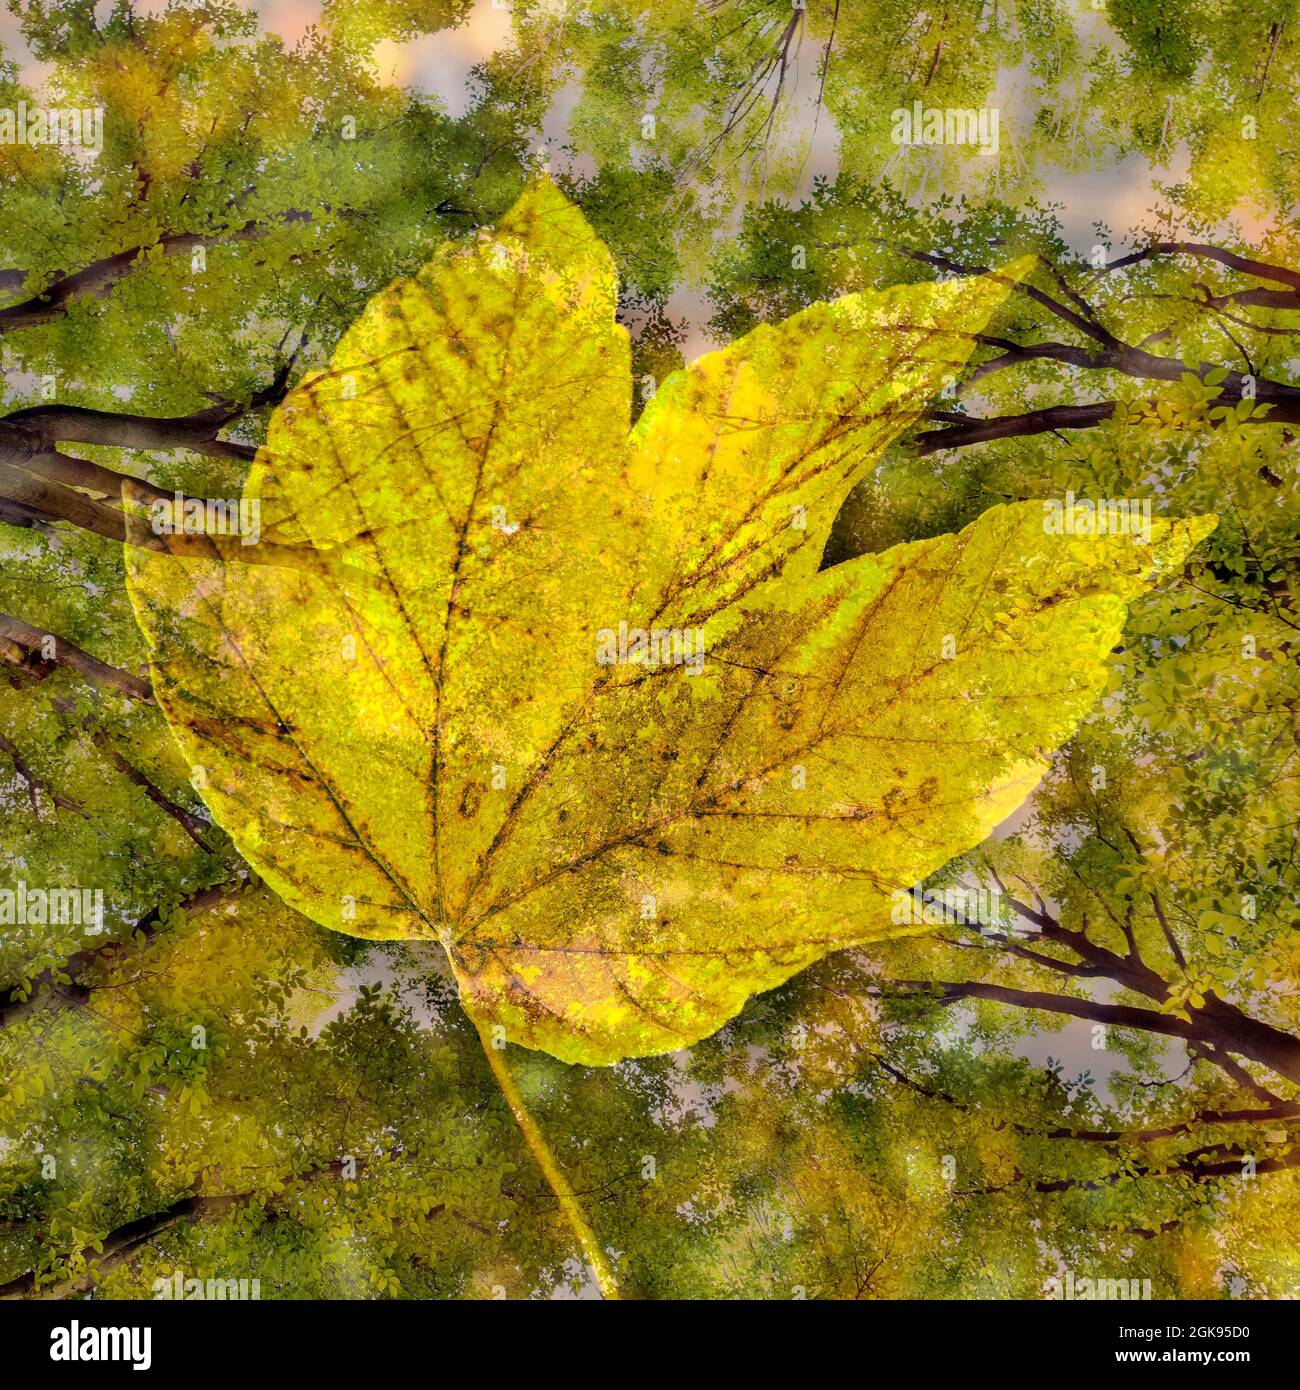 Carpino comune, carpino europeo (Carpinus betulus), fotografia sperimentale con cornici e foglia d'autunno, Germania Foto Stock